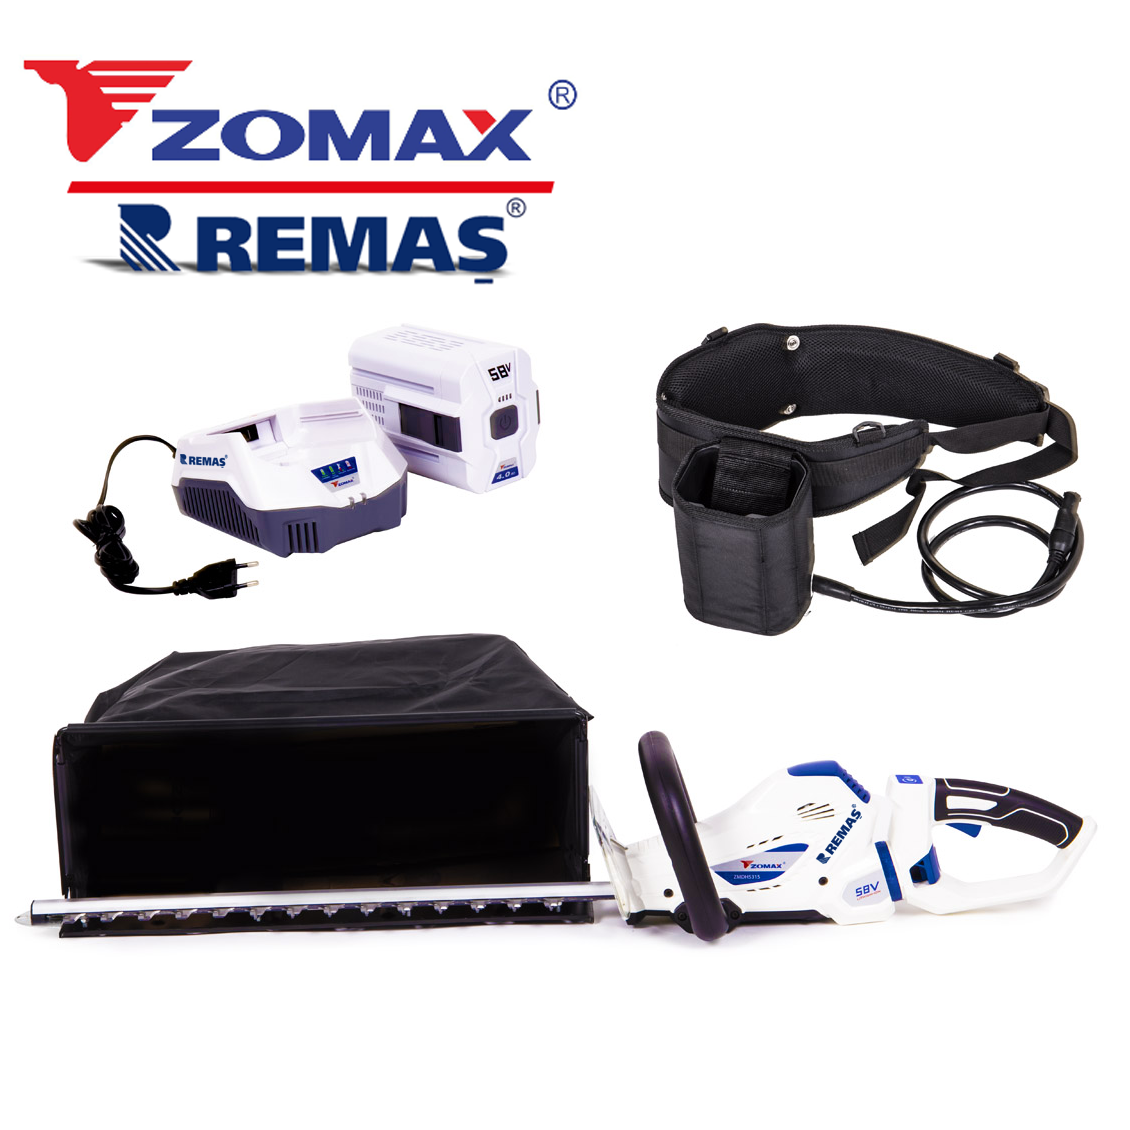 Zomax ZMDH 5315 Şarjlı 4.0 Ah Akülü Sepetli Çay Toplama Makinası